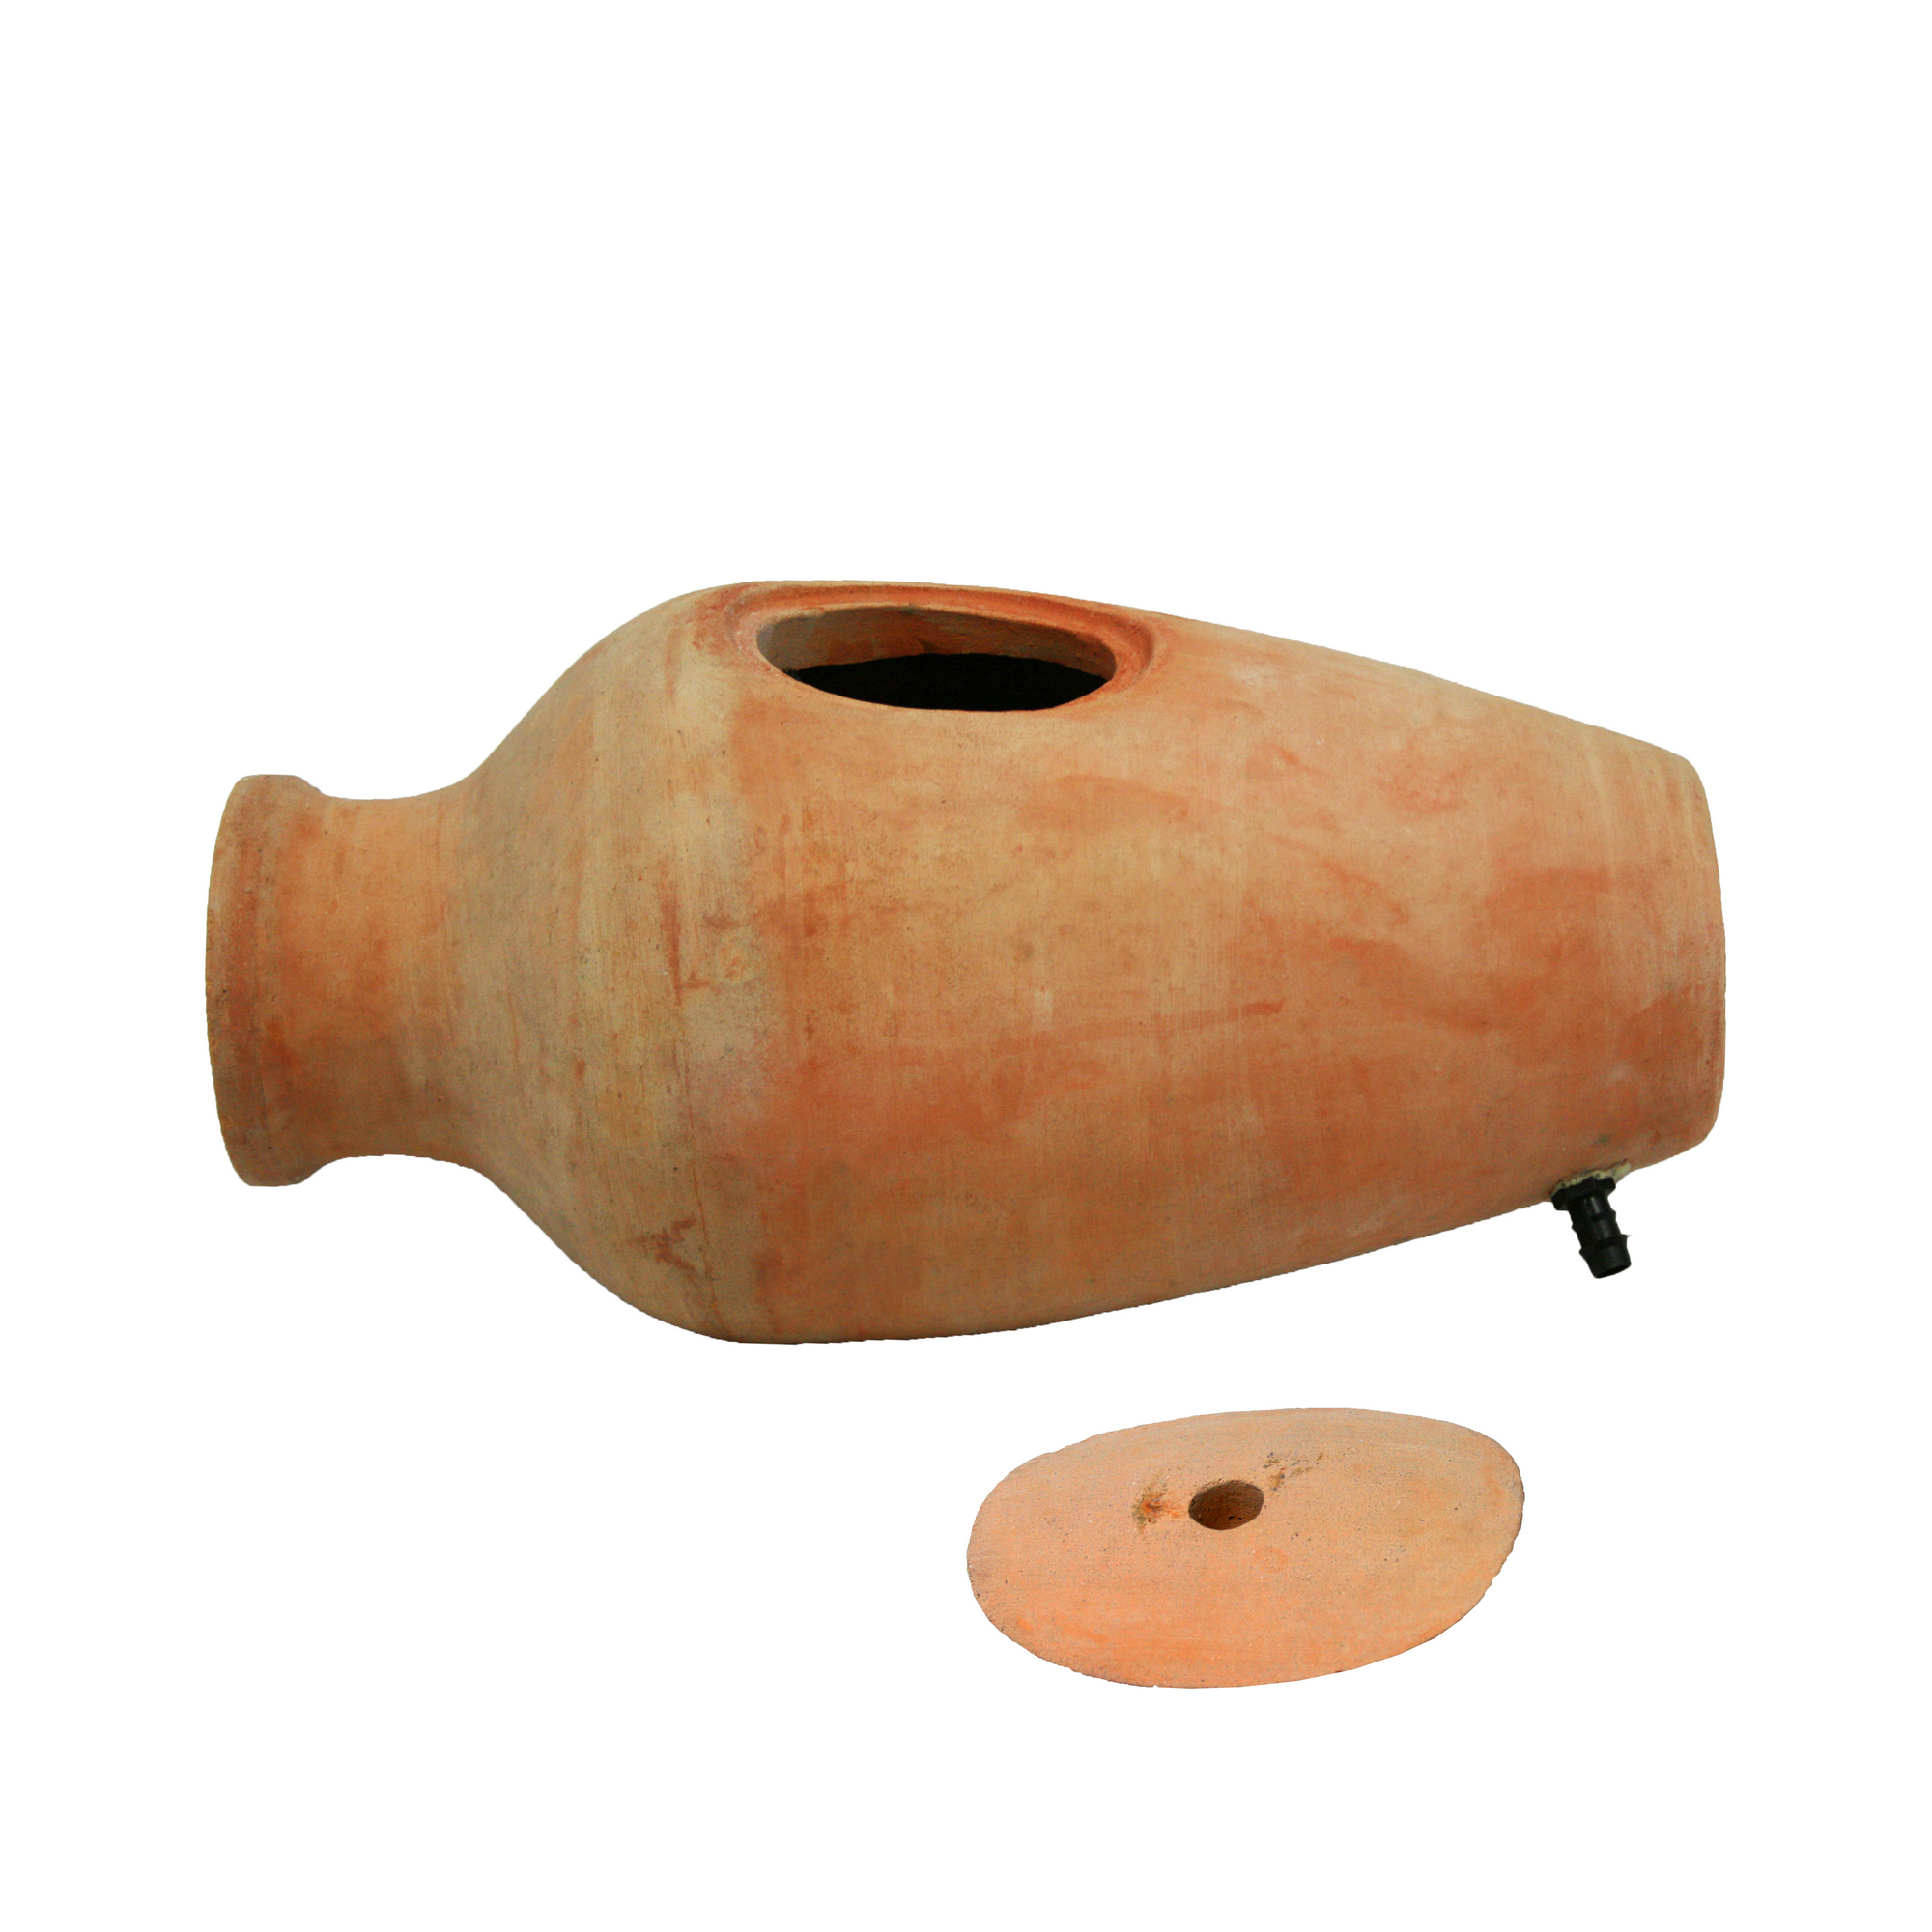 Teichfilter mit Wasserspiel 'Amphora' 60 x 30 x 28 cm + product picture